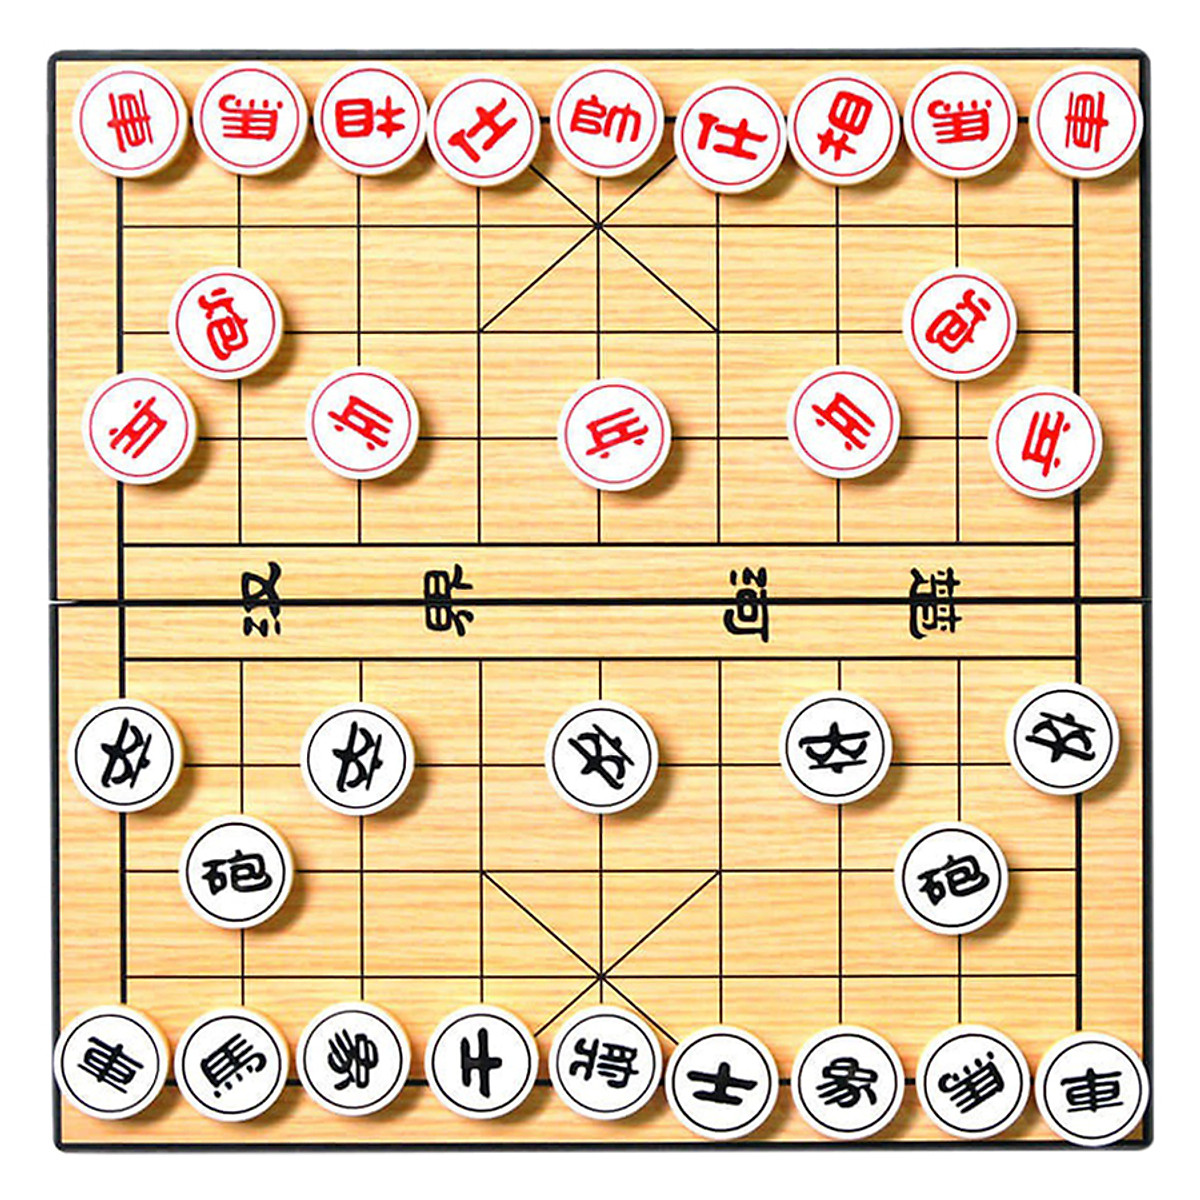 Với cờ shogi nam châm cao cấp, bạn có thể chơi cờ ở bất cứ đâu mà không lo mất các quân cờ. Được sản xuất từ chất liệu chất lượng, cờ shogi nam châm sẽ giúp cho trận đấu của bạn trở nên trọn vẹn và thú vị hơn. Truy cập vào trang web của chúng tôi để tìm hiểu thêm về sản phẩm này nhé.